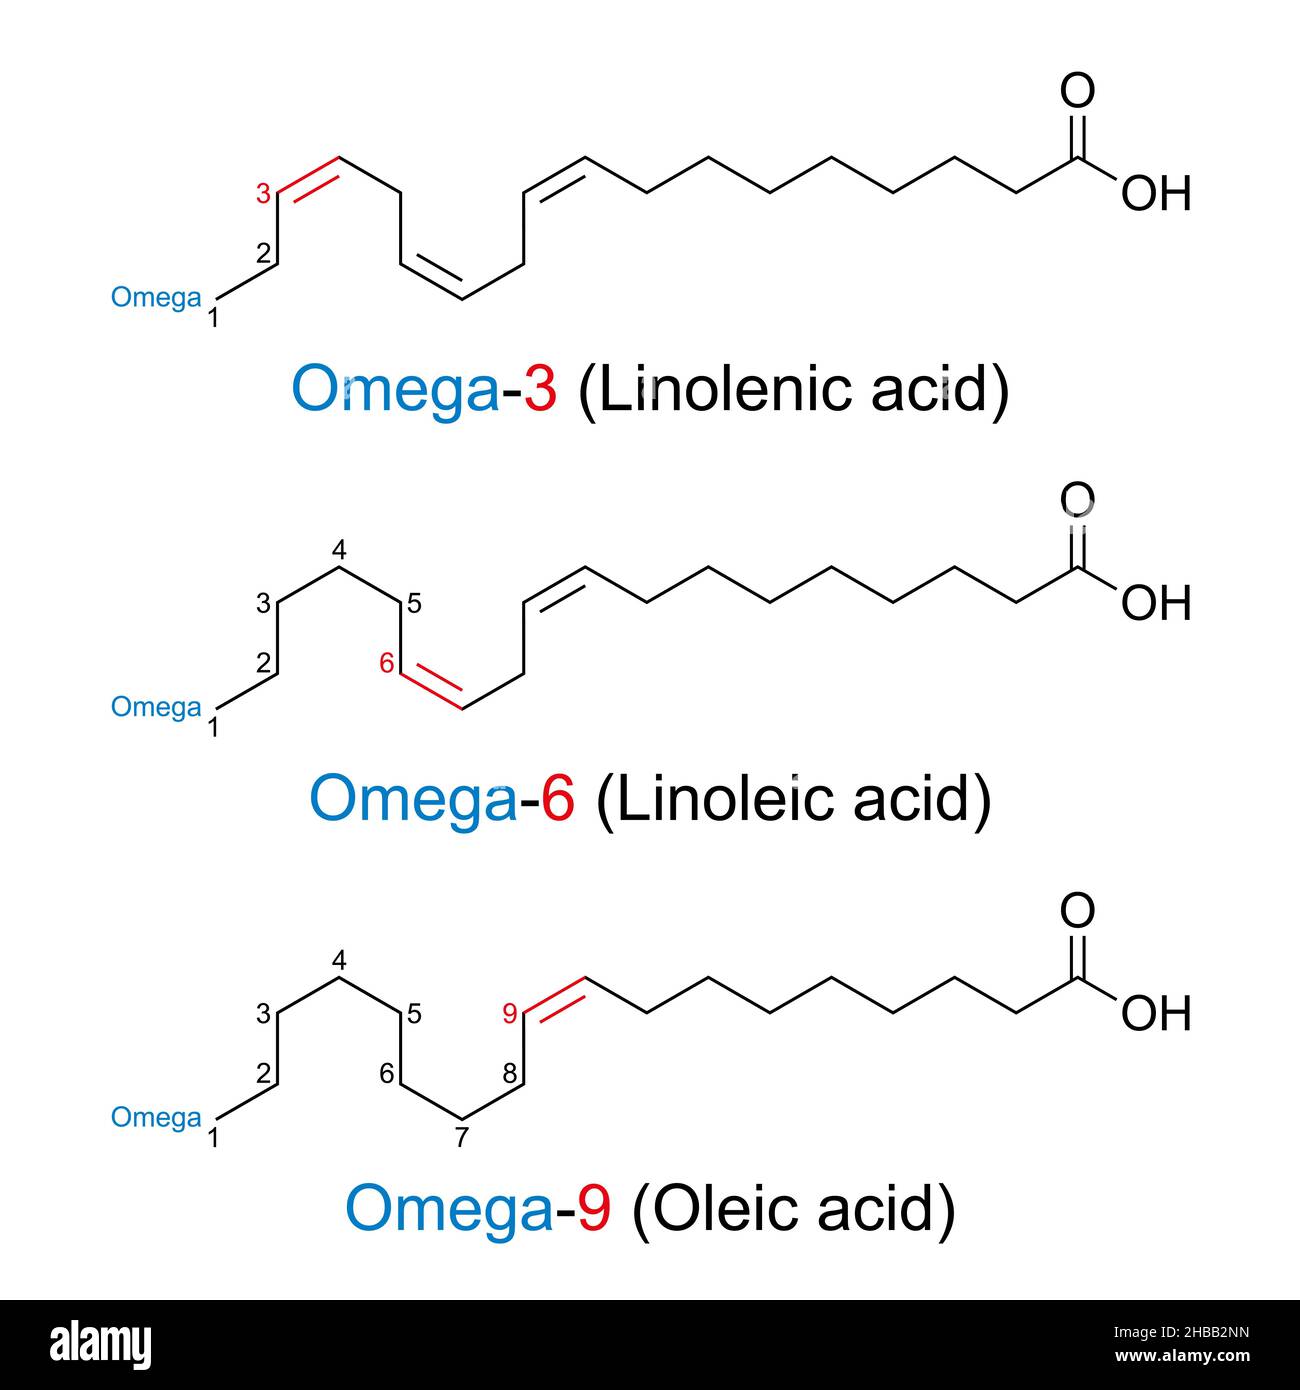 Ácidos grasos omega-n. La posición del primer enlace doble del ácido graso se da con n como un número, contando desde el extremo omega de la molécula. Foto de stock